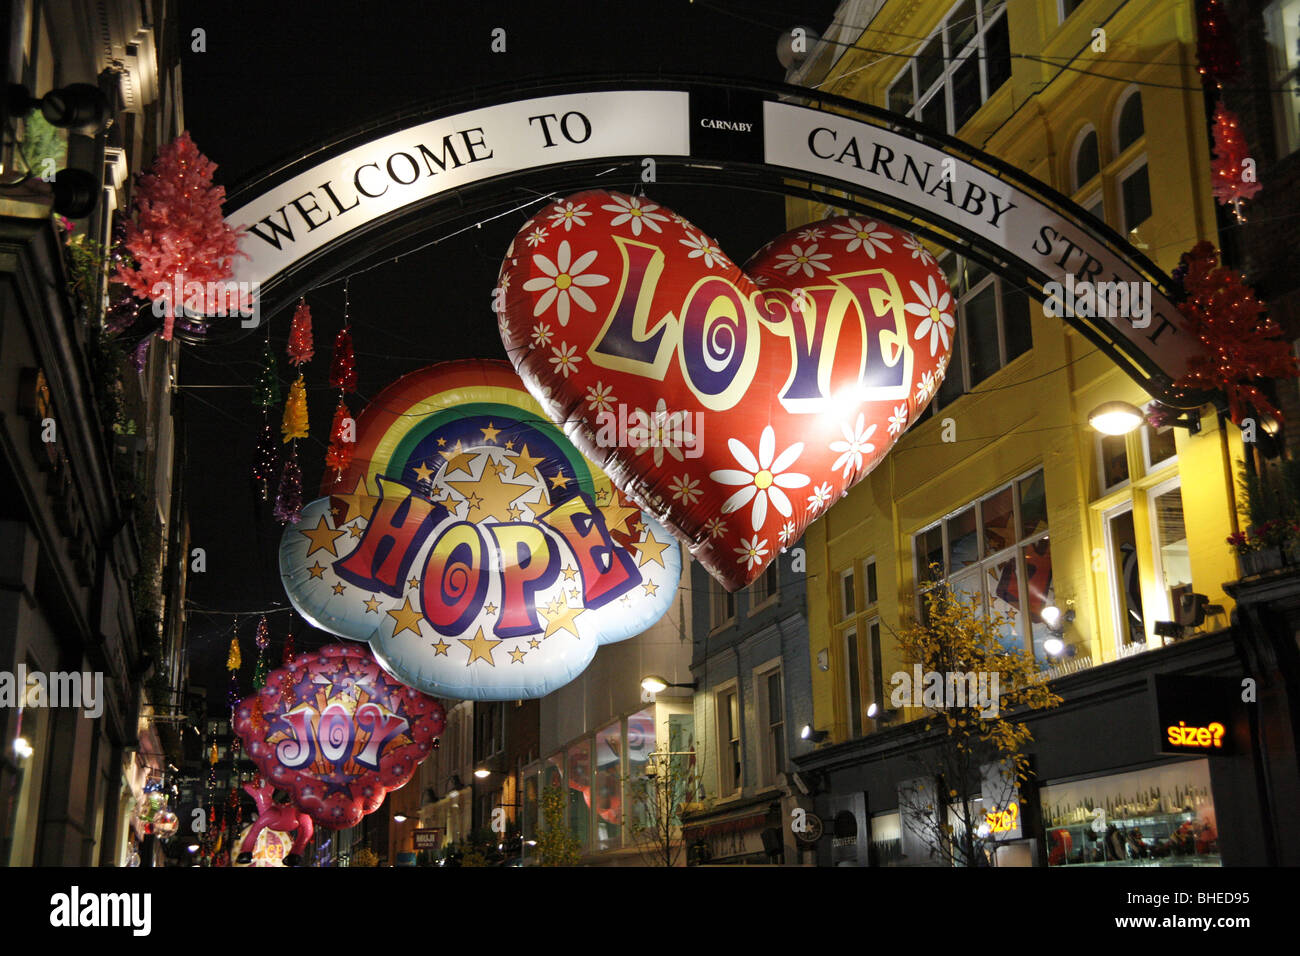 Ballon de Noël illuminations et décorations, lumières dans Carnaby Street, Londres Banque D'Images